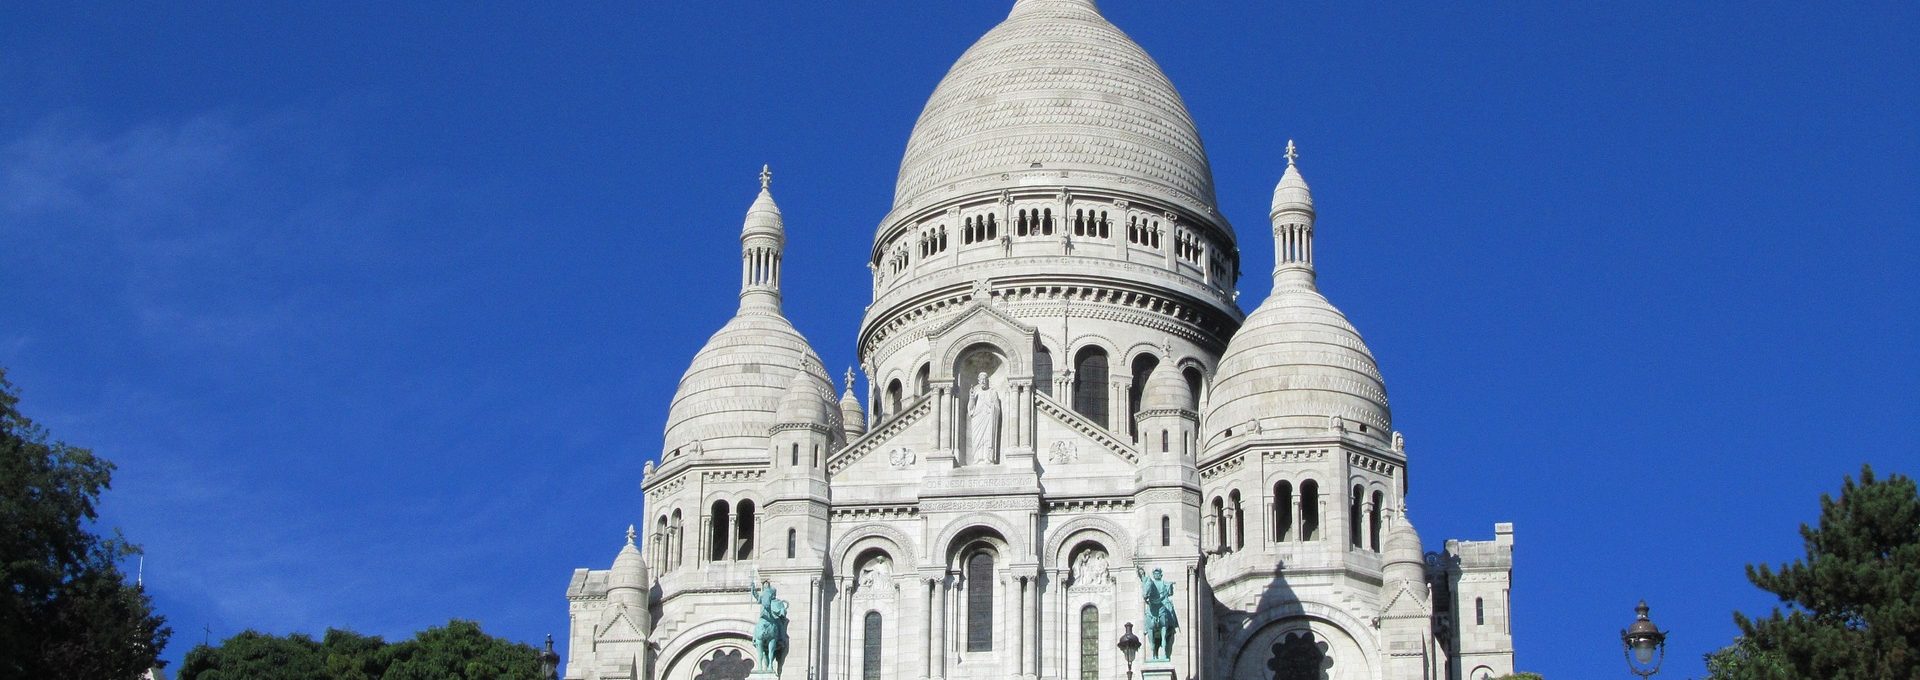 Vista da Basílica Sacré Coeur em Paris